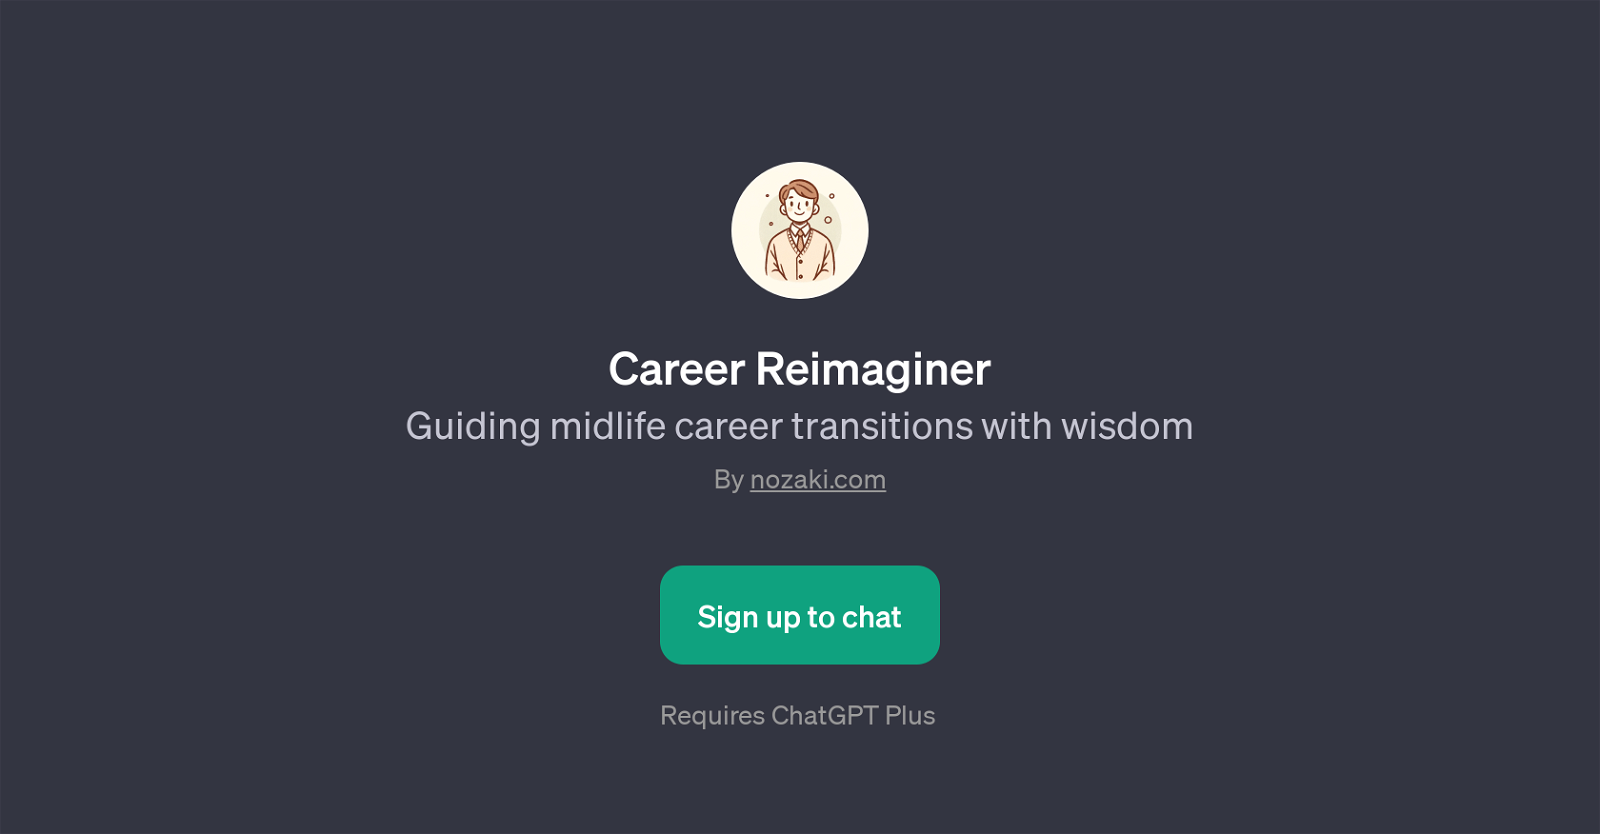 Career Reimaginer website